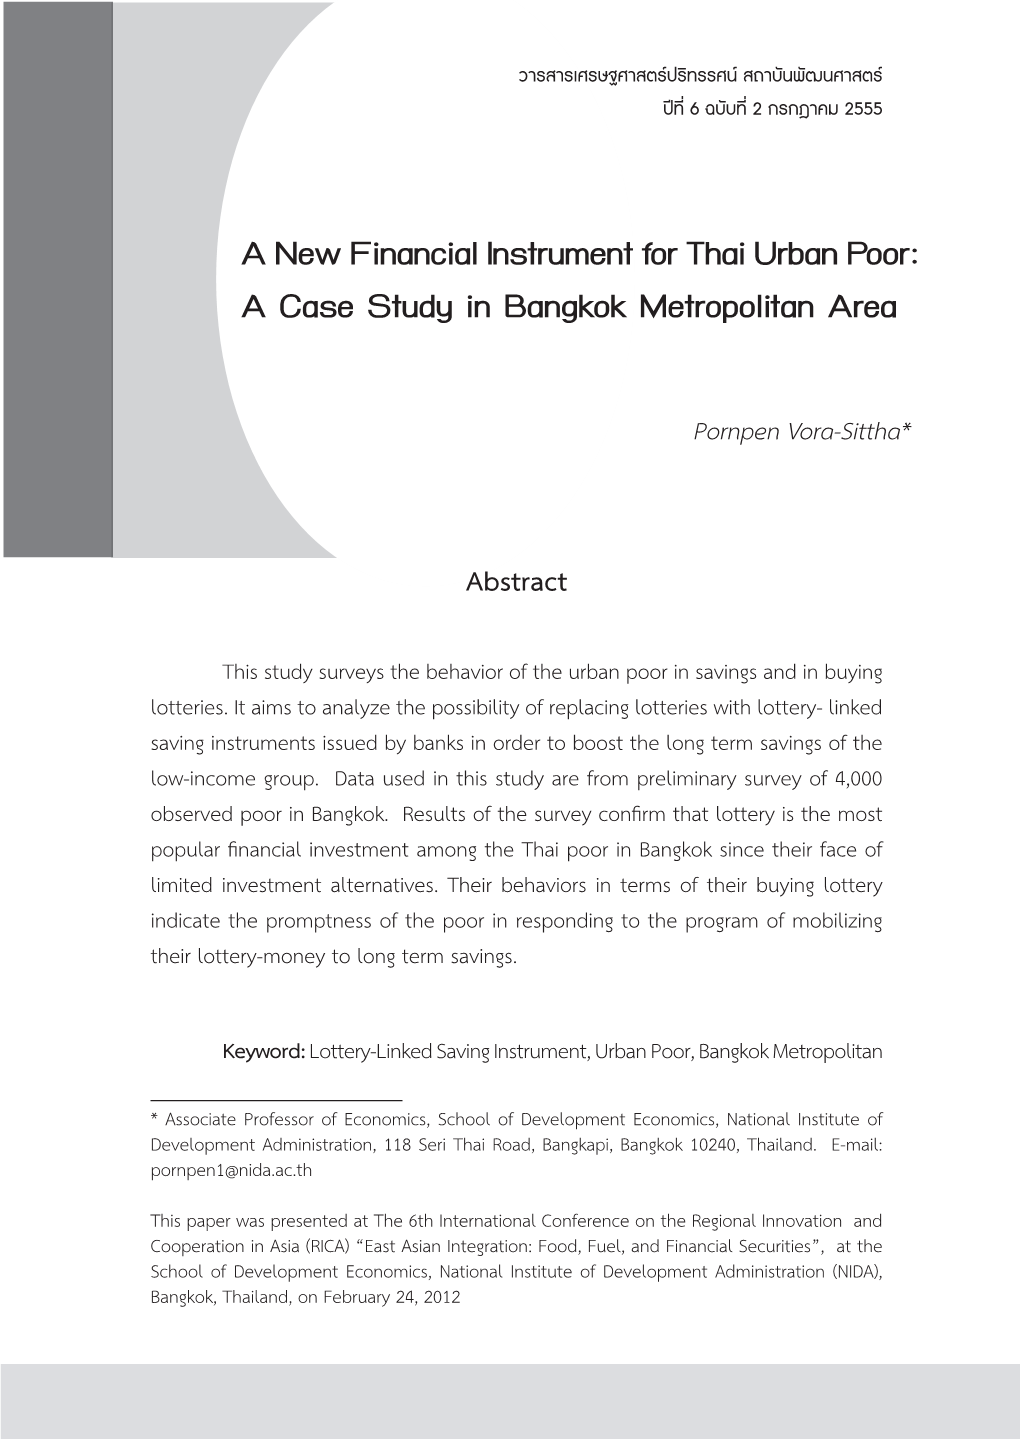 A New Financial Instrument for Thai Urban Poor: a Case Study in Bangkok Metropolitan Area